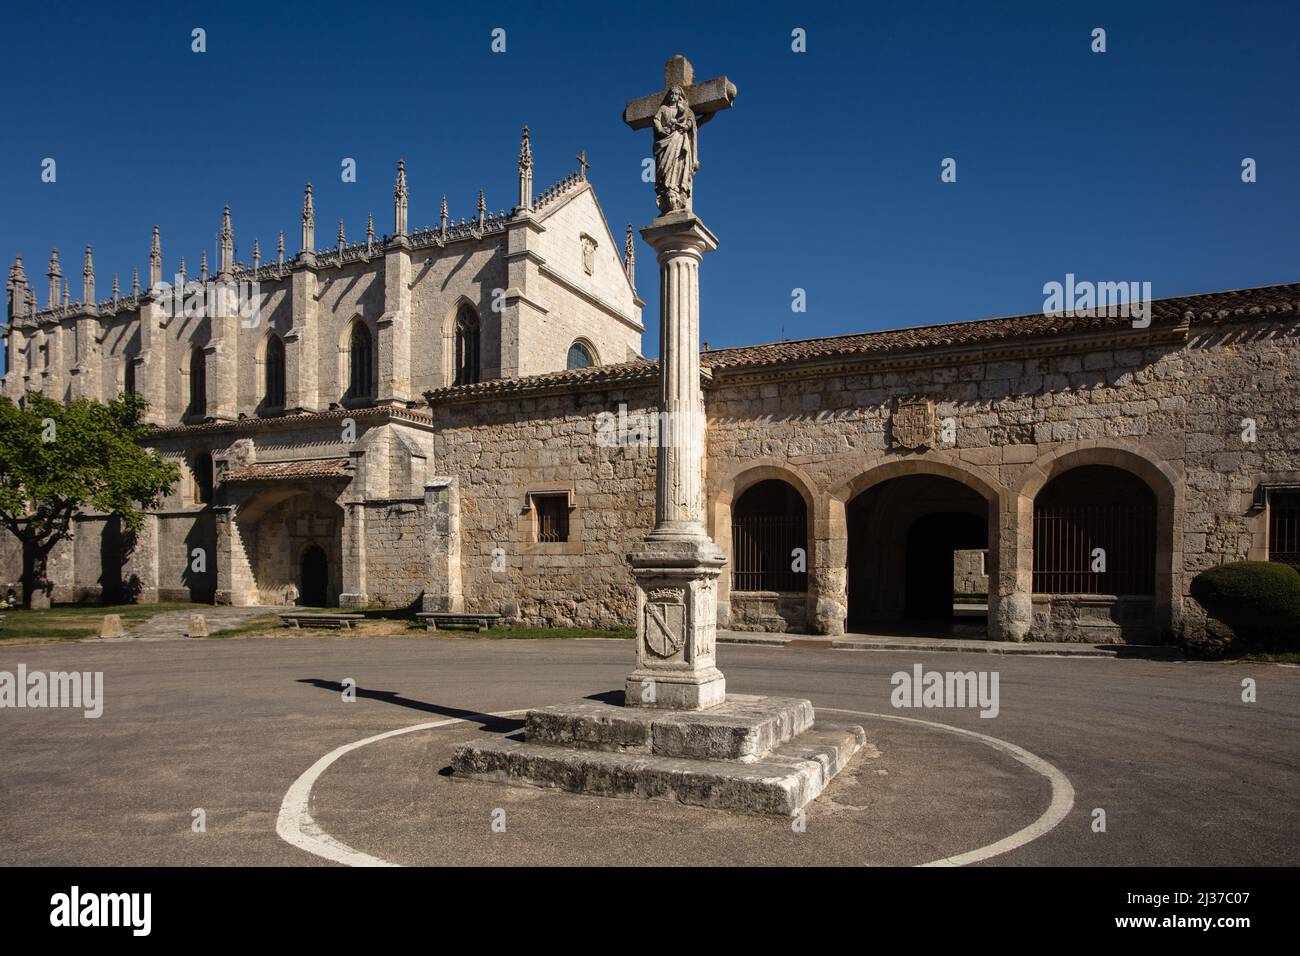 La Certosa di Miraflores è un monastero gotico abitato dai monaci certosini a Burgos. Spagna. Foto Stock